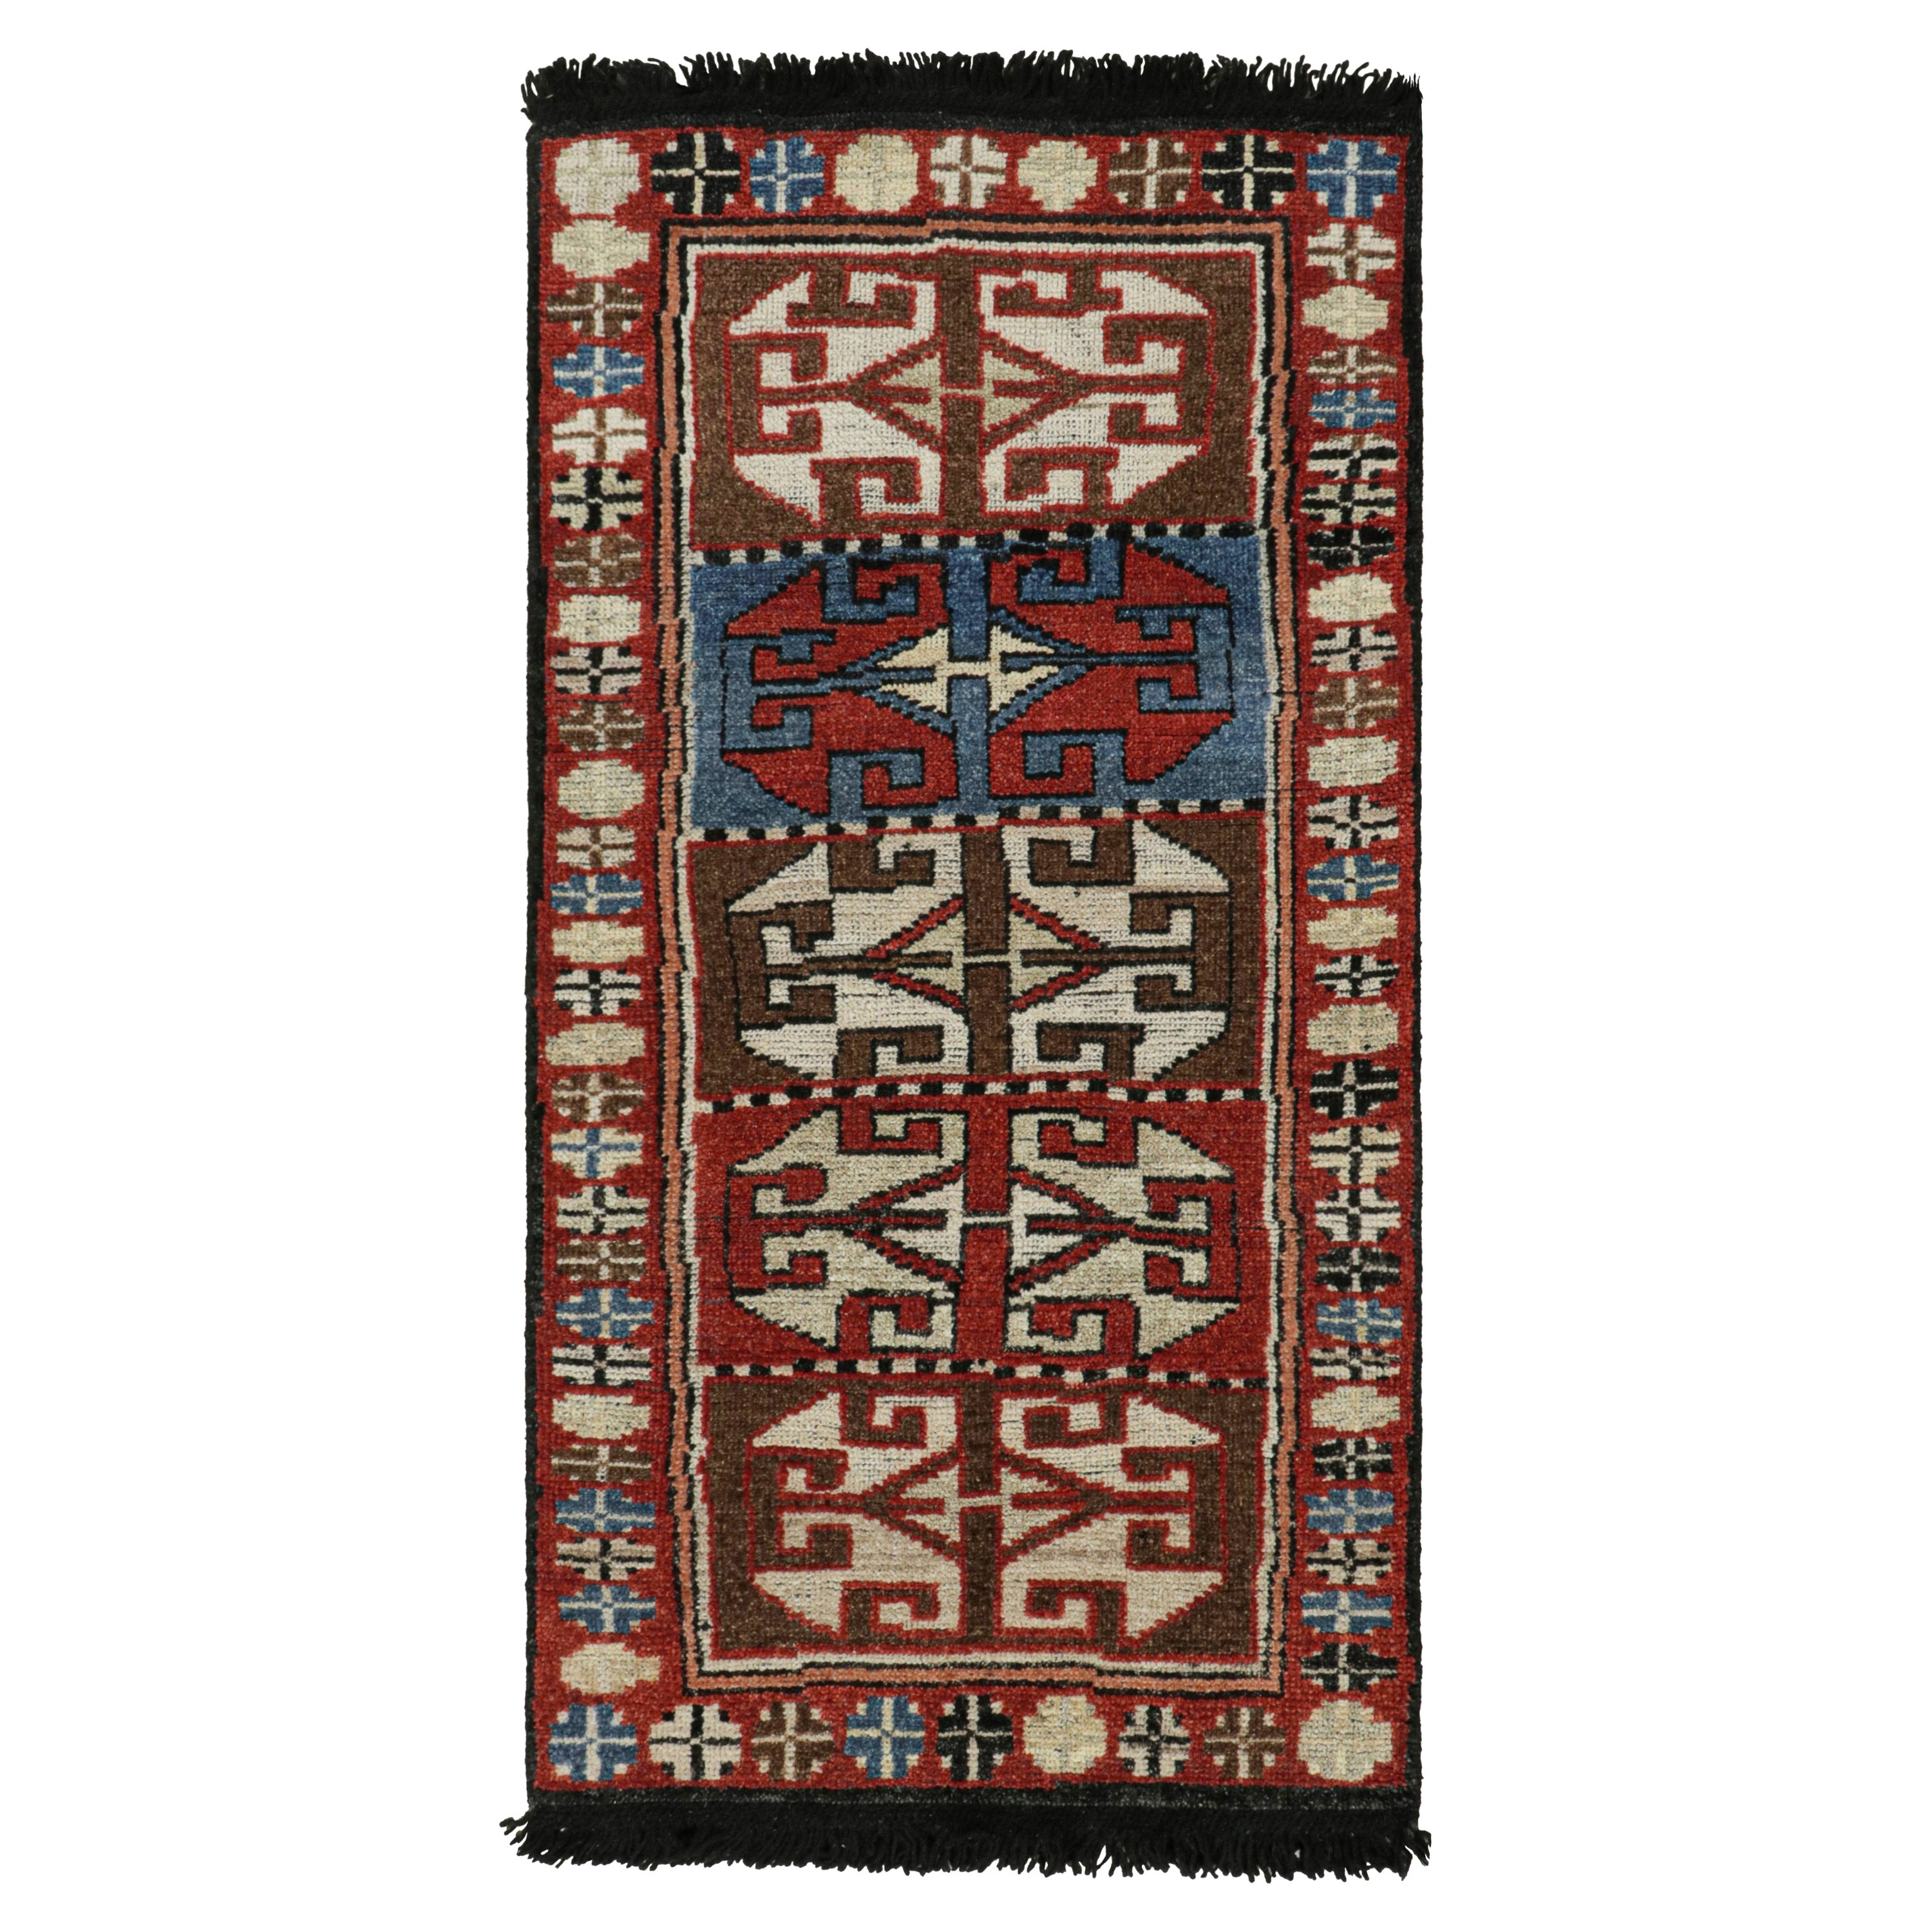 Rug & Kilim's Antique Tribal Style rug in Red, Blue & Brown Patterns (tapis ancien de style tribal à motifs rouges, bleus et bruns) en vente